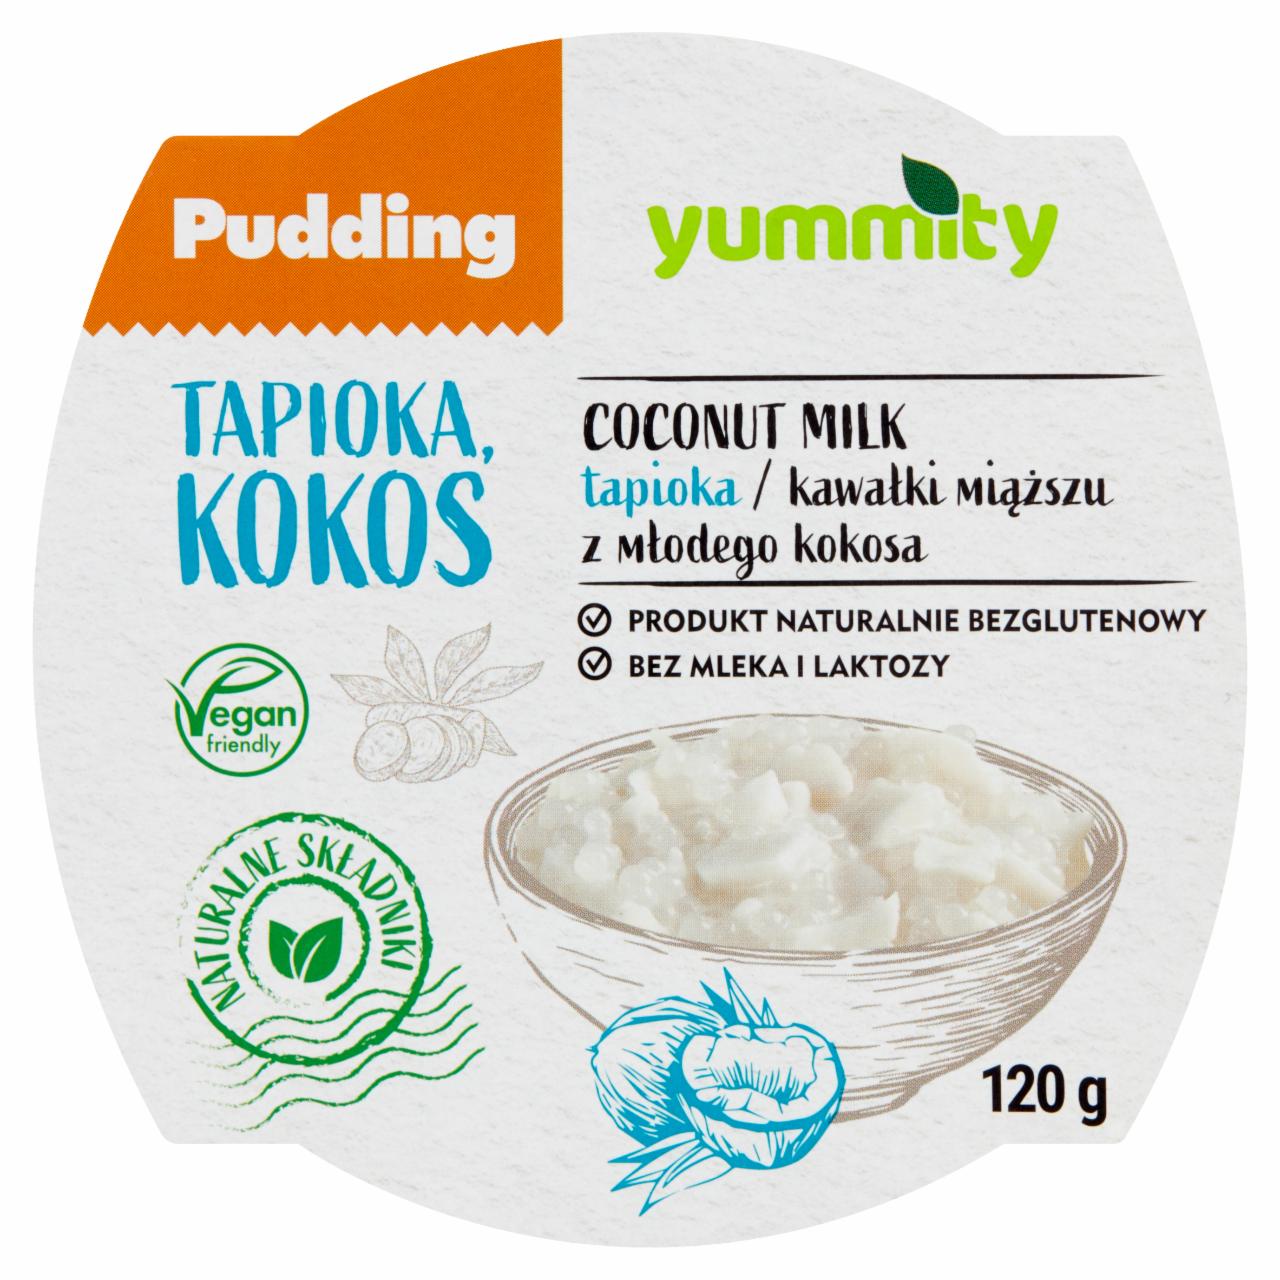 Zdjęcia - Yummity Bezglutenowy pudding z tapioką i kokosem 120 g